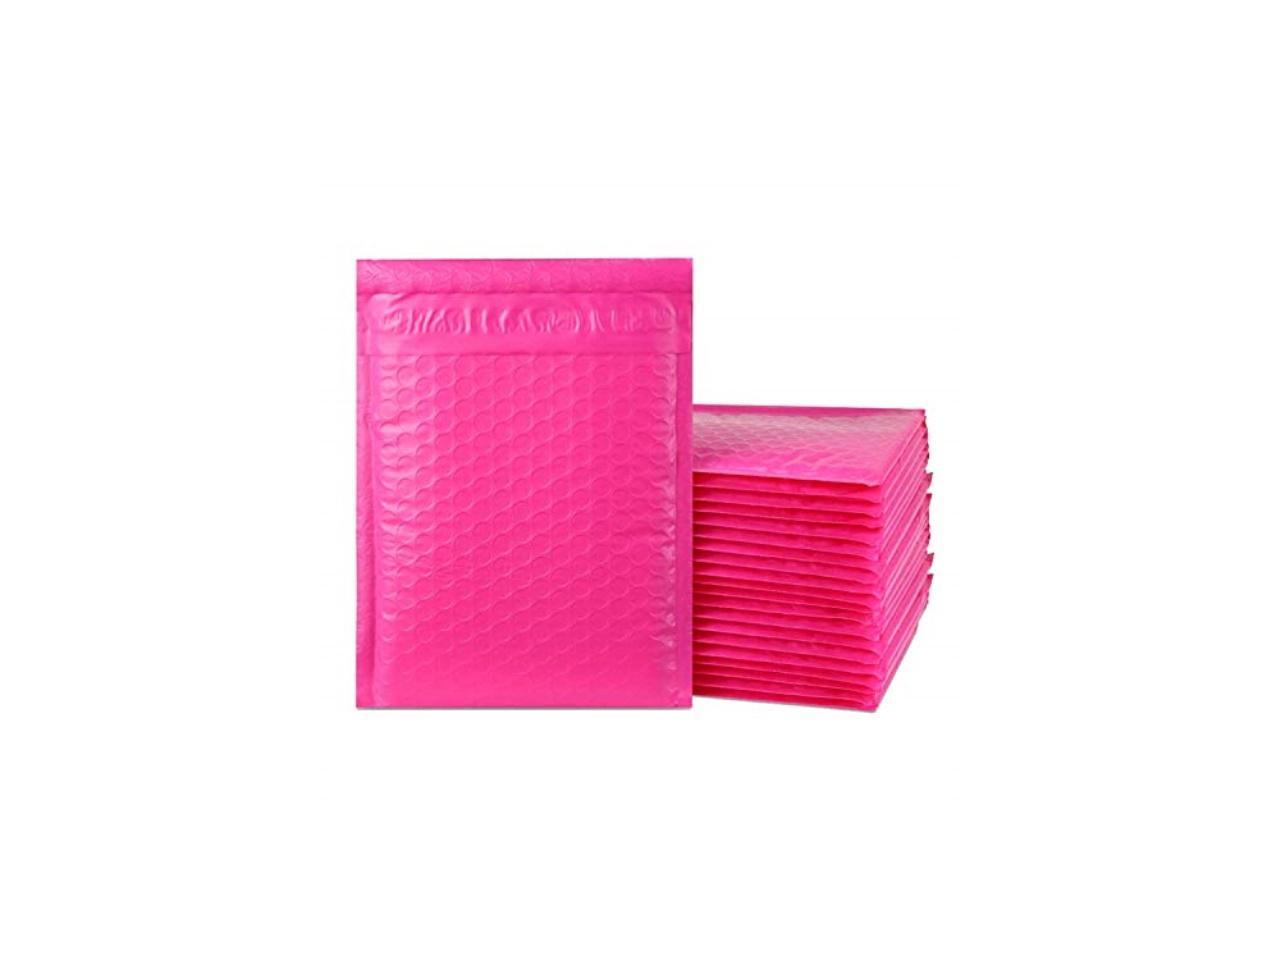 iMBAPrice 25-pack # 0  total 25 sacs 15,2 x 25,4 cm de couleur ROSE VIF autoadhésives Poly enveloppes à bulles rembourré dexpédition 